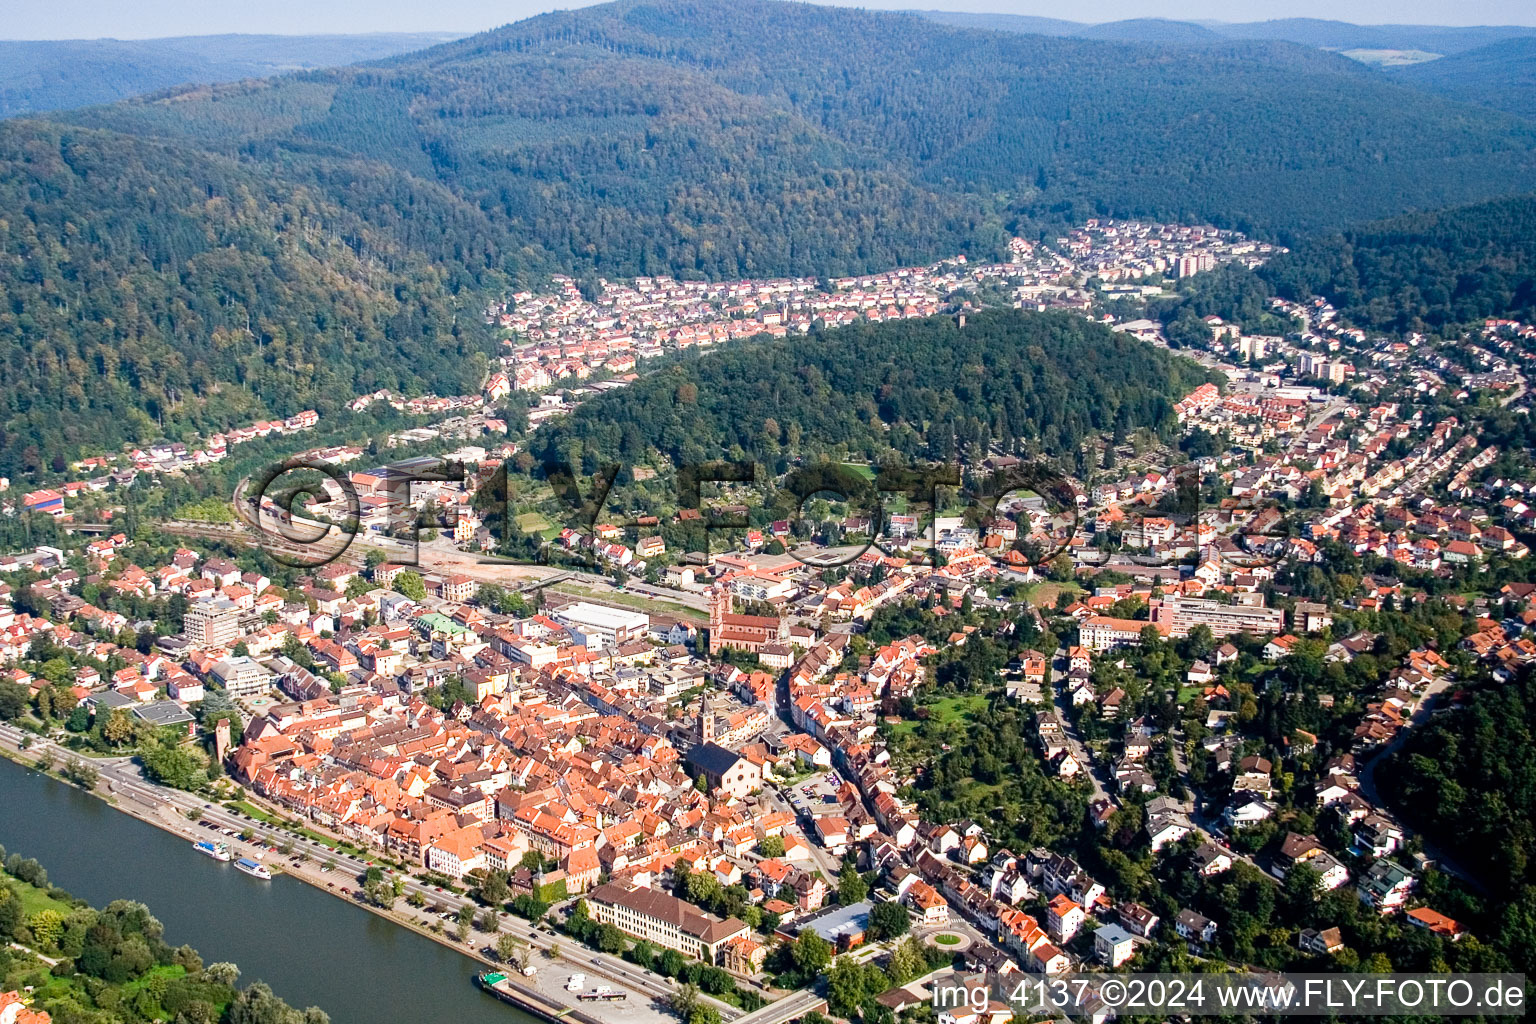 Schrägluftbild von Ortskern am Uferbereich des Neckar - Flußverlaufes in Eberbach im Bundesland Baden-Württemberg, Deutschland